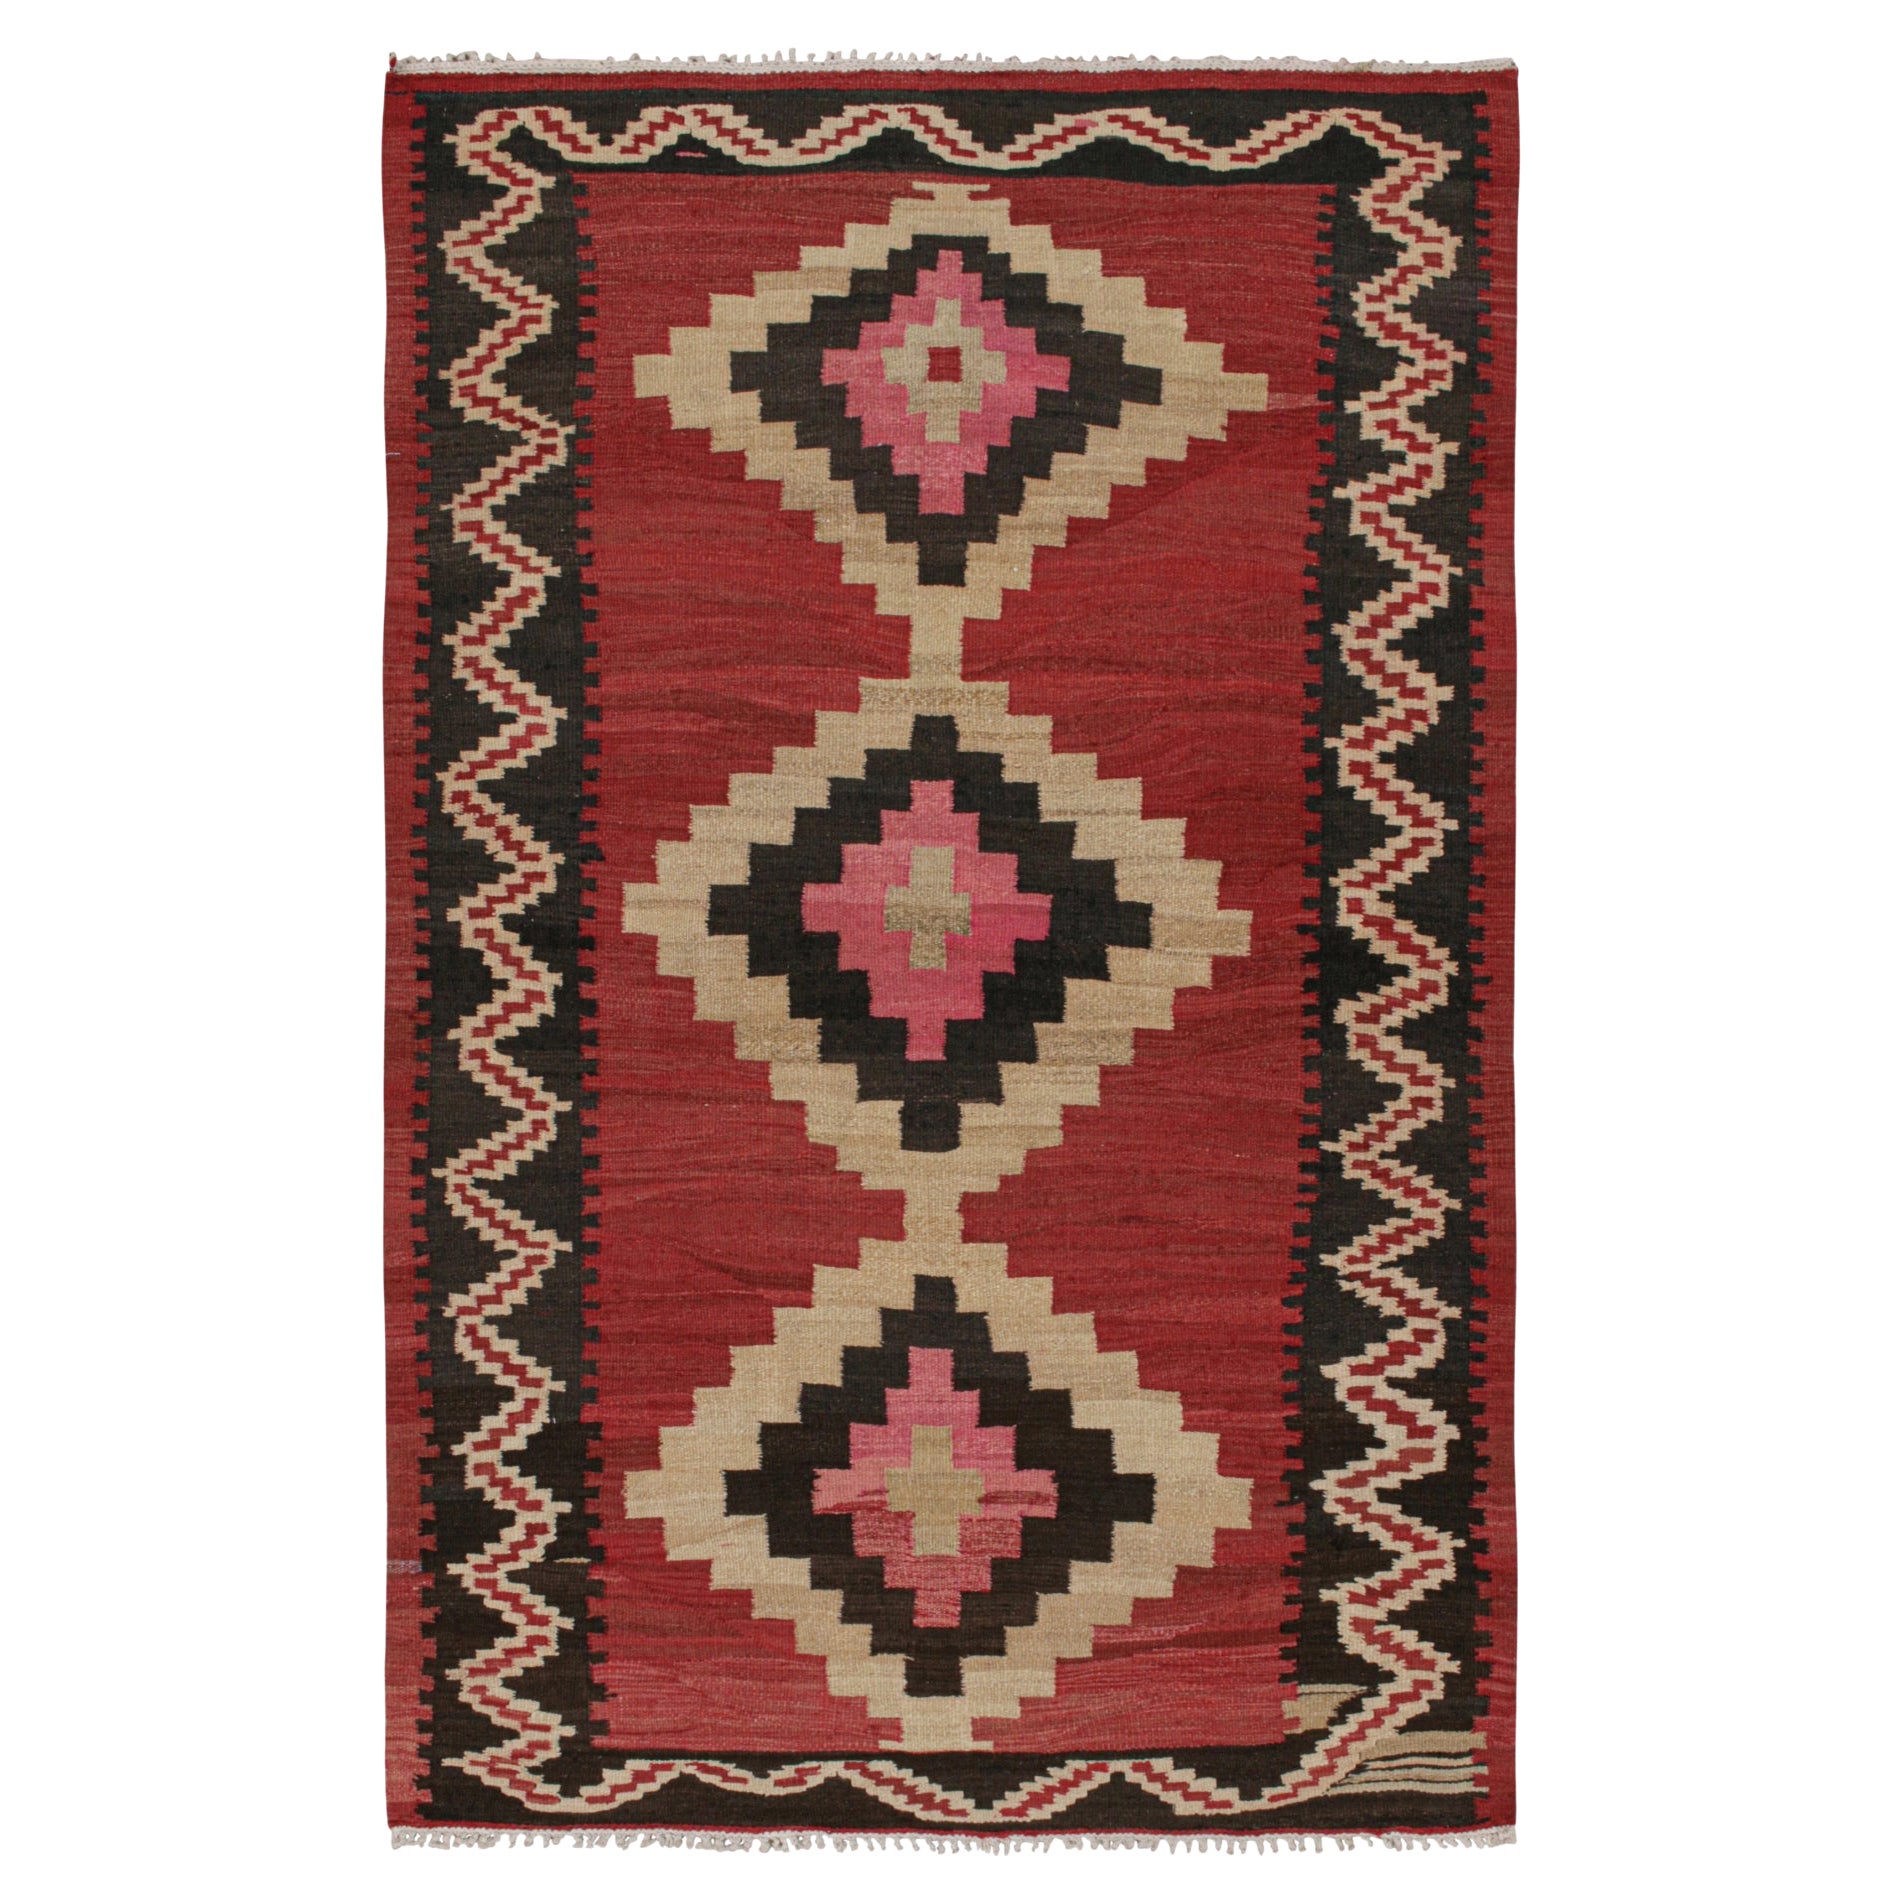 Shahsavan Persischer Kelim in Rot, Beige und Schwarz mit Muster von Teppich & Kilim